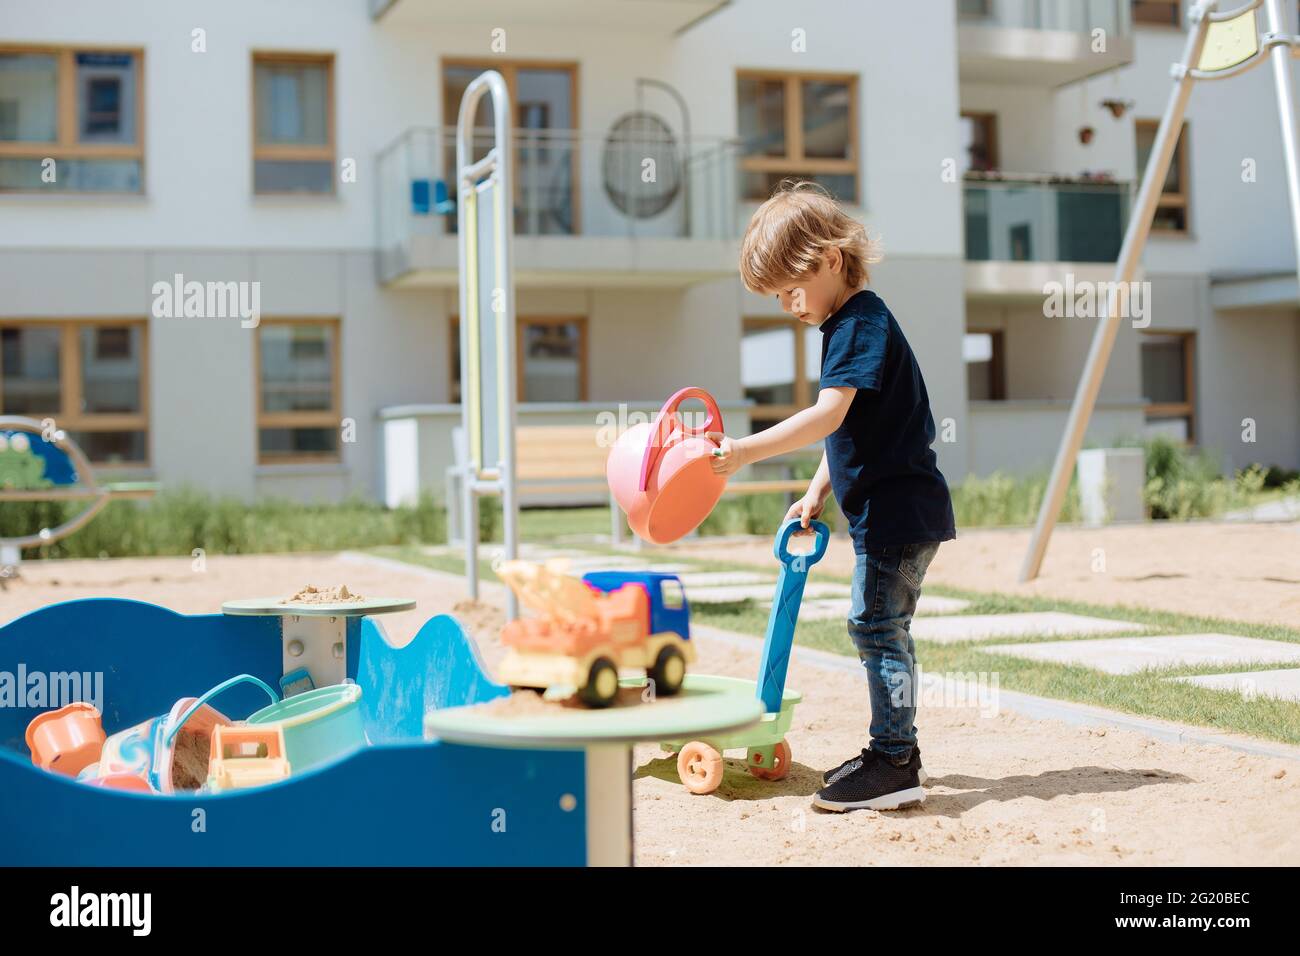 un enfant de 3 ans joue dans une aire de jeux ouverte dans la cour avec des jouets. Concept de loisirs pour enfants Banque D'Images